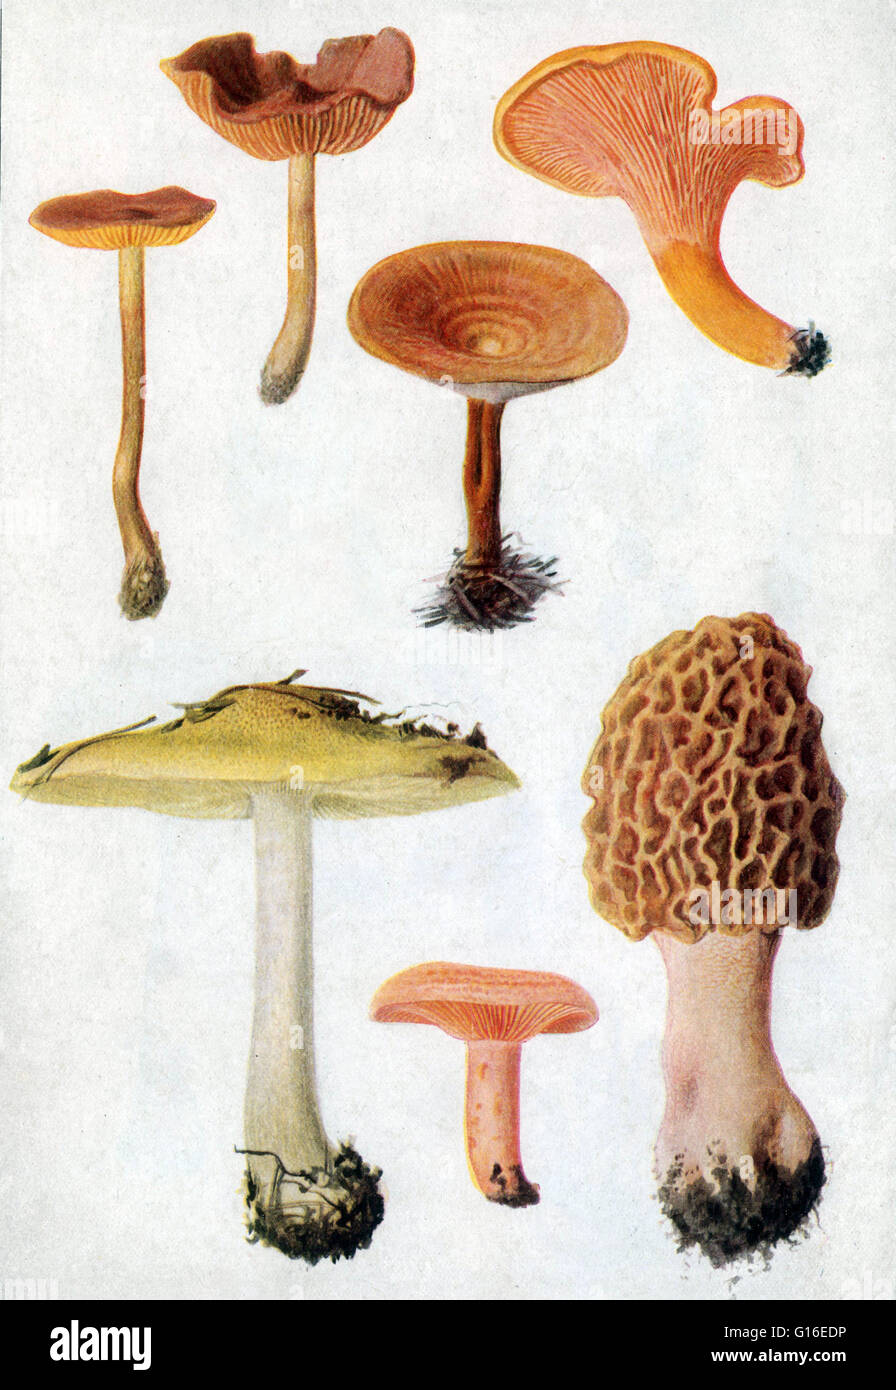 Pilze (nicht identifiziert). Ein Pilz ist jedes Mitglied einer großen Gruppe von Eukaryonten, die Mikroorganismen wie Hefen und Schimmelpilze sowie vertrauter Pilze enthält. Diese Organismen sind klassifiziert als Königreich, Pilze, die unterscheidet sich von Stockfoto